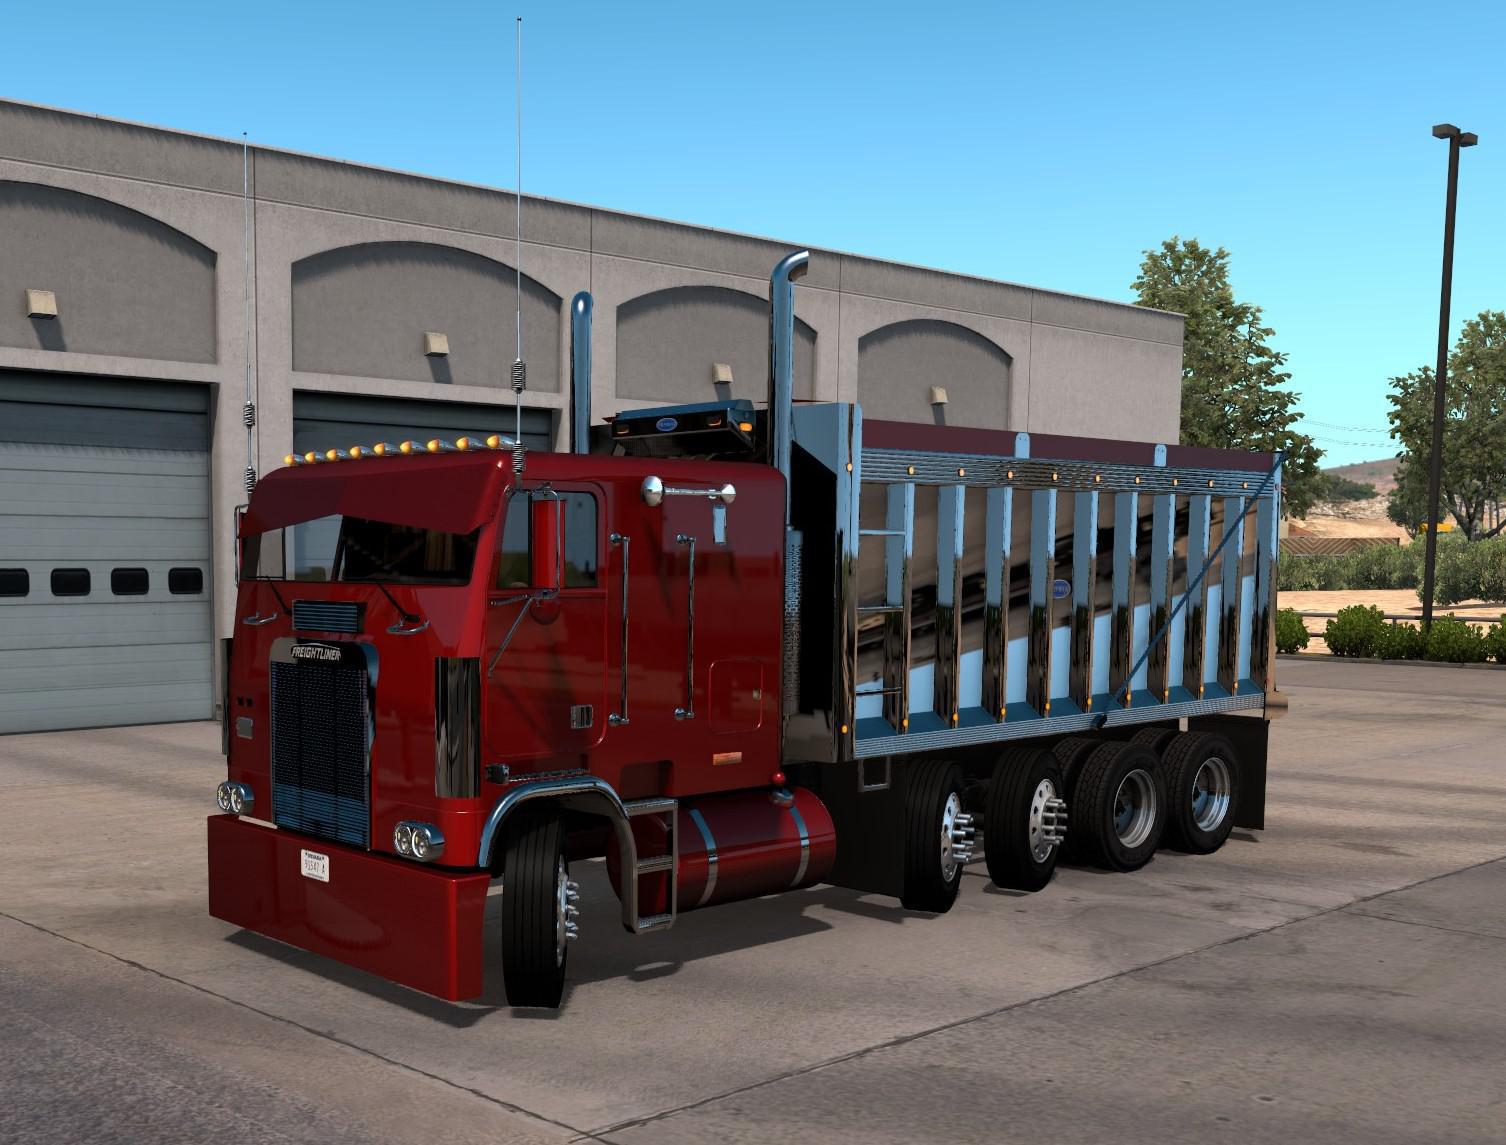 Ats Freightliner Flb Custom Truck V11 138x American Truck Simulator Modsclub